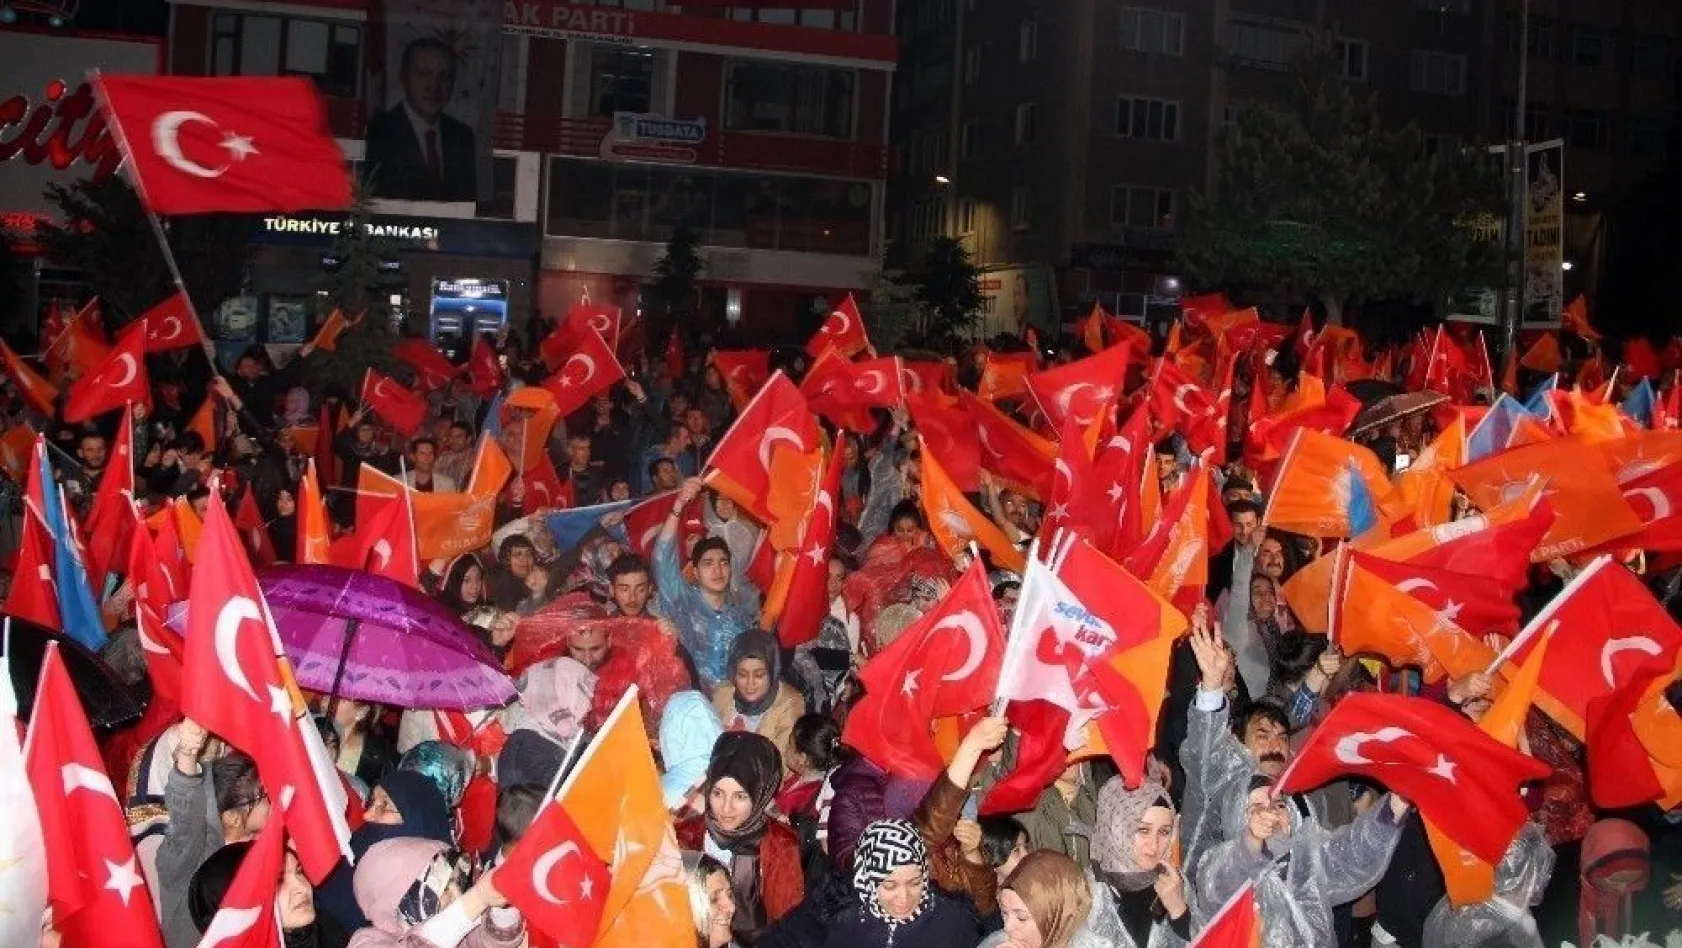 Başbakan Yardımcısı Akdağ: 'Bu gece FETÖ üzüldü, PKK üzüldü, onların yandaşları üzüldü'
